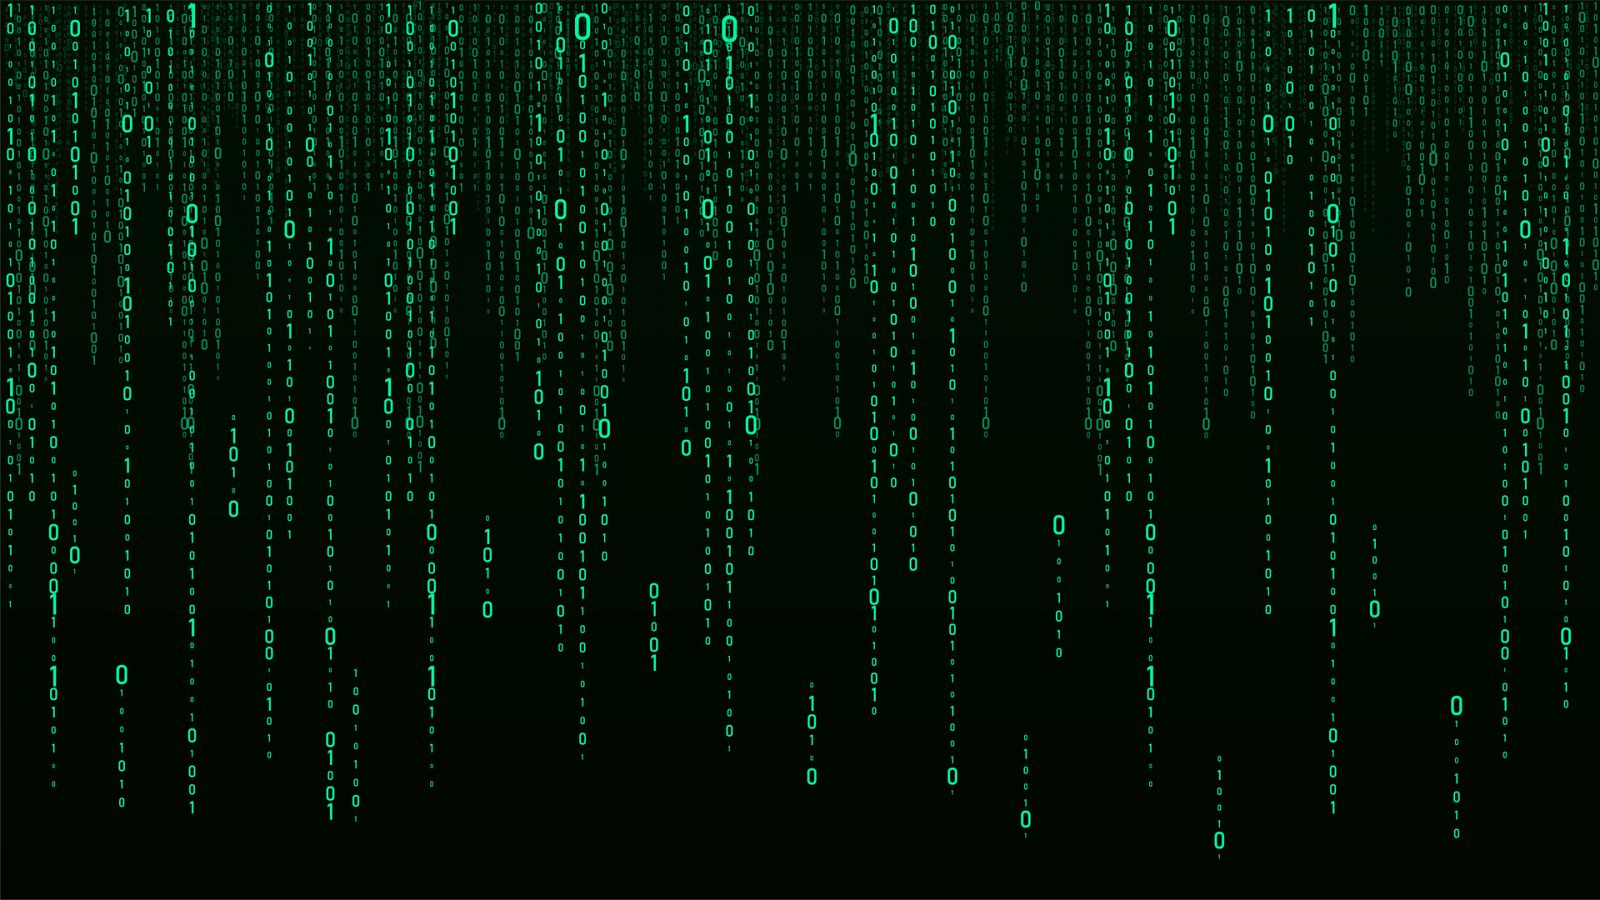 ¿'Matrix' era solo ficción o una profética realidad?